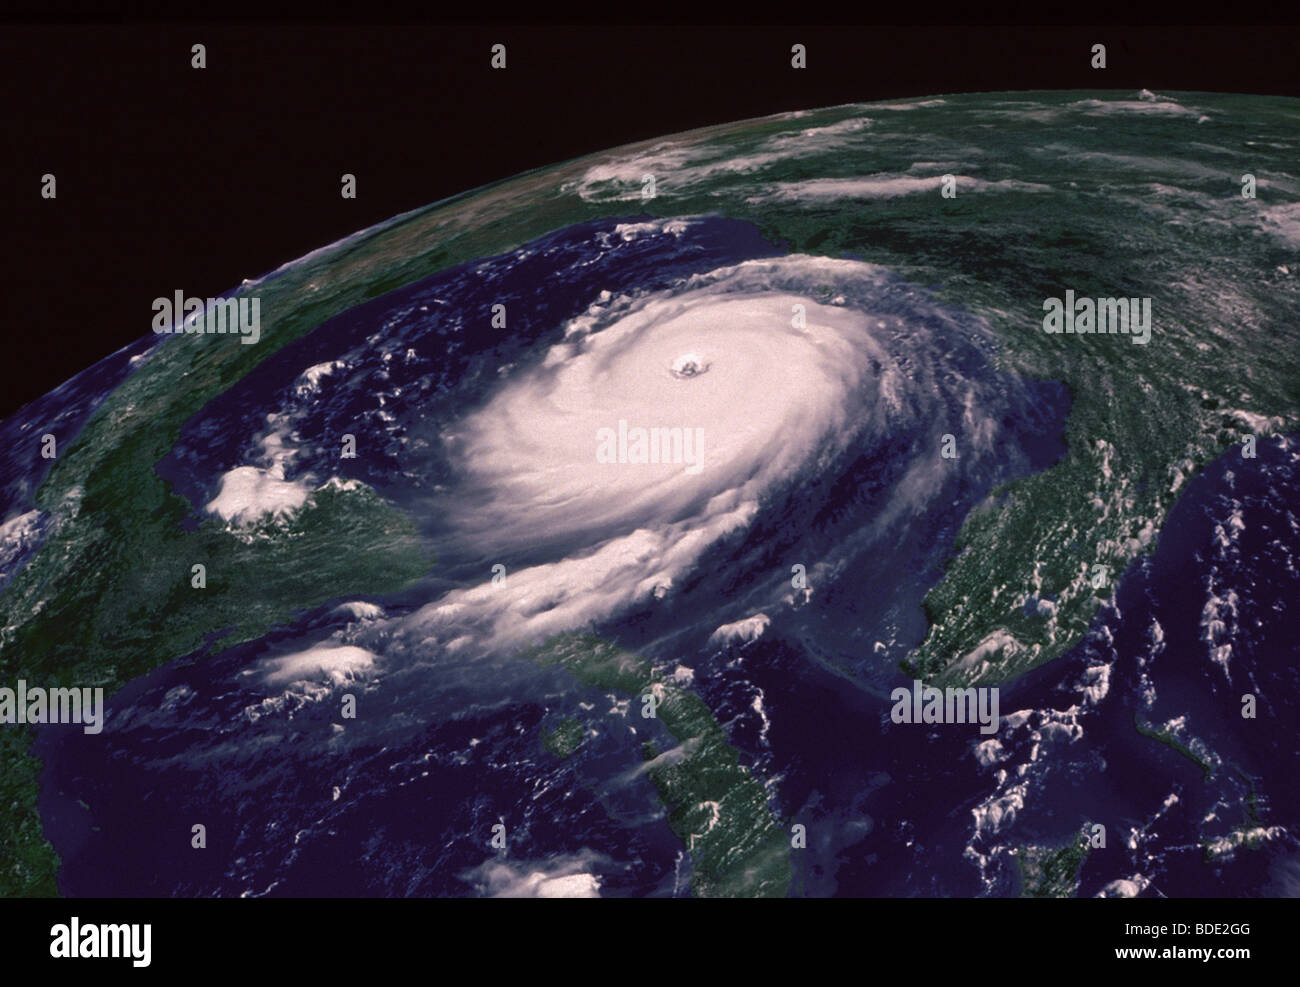 Hurrikan Katrina im Golf von Mexiko, aus dem Weltraum Stockfotografie -  Alamy